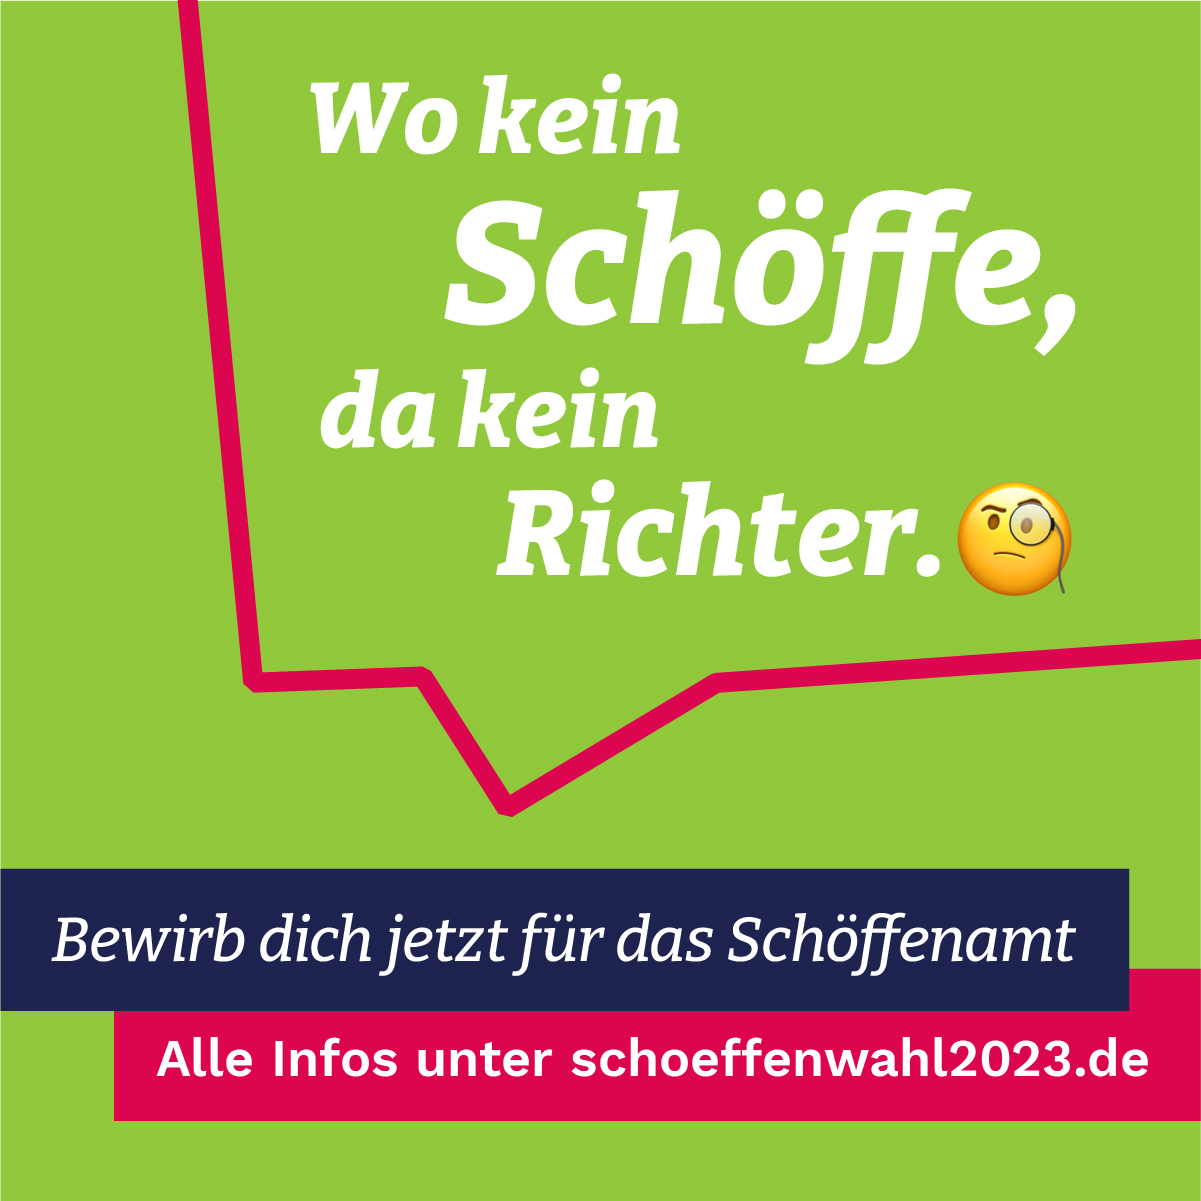 Imagebild für die Schöffenwahl 2023 - Motto: Wo kein Schöffe, da kein Richter.